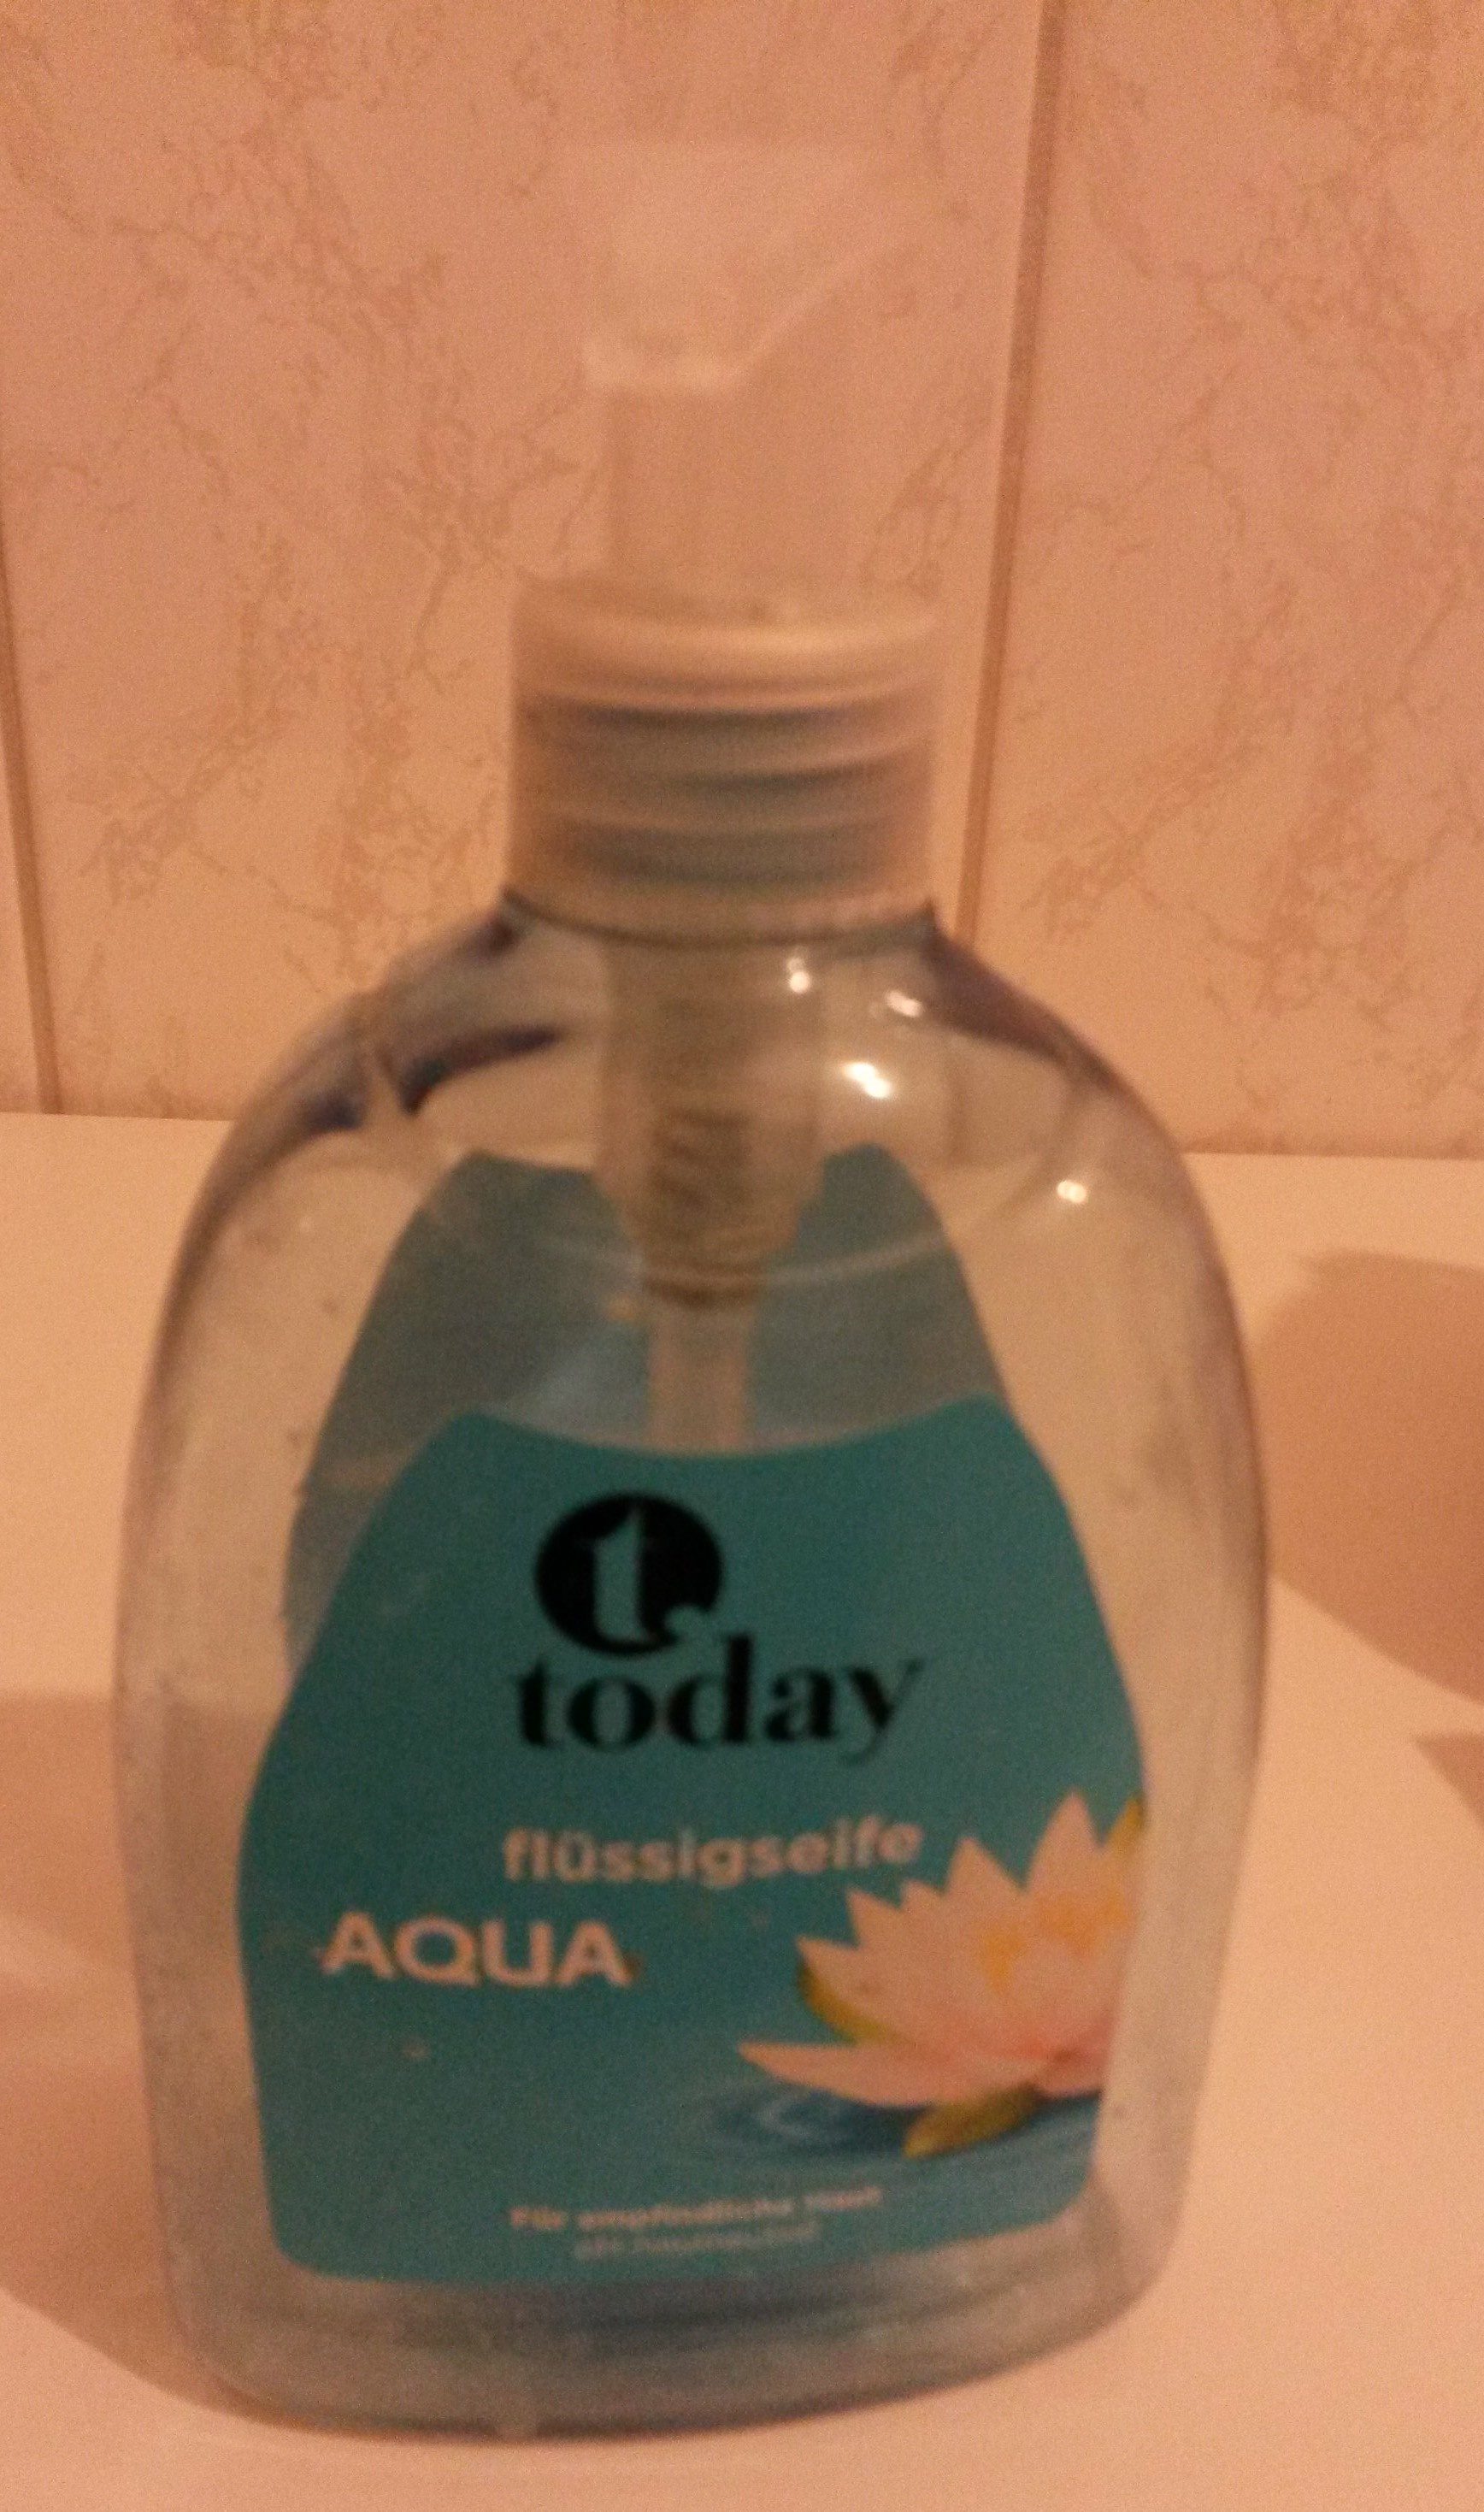 today Flüssigseife aqua - 製品 - de